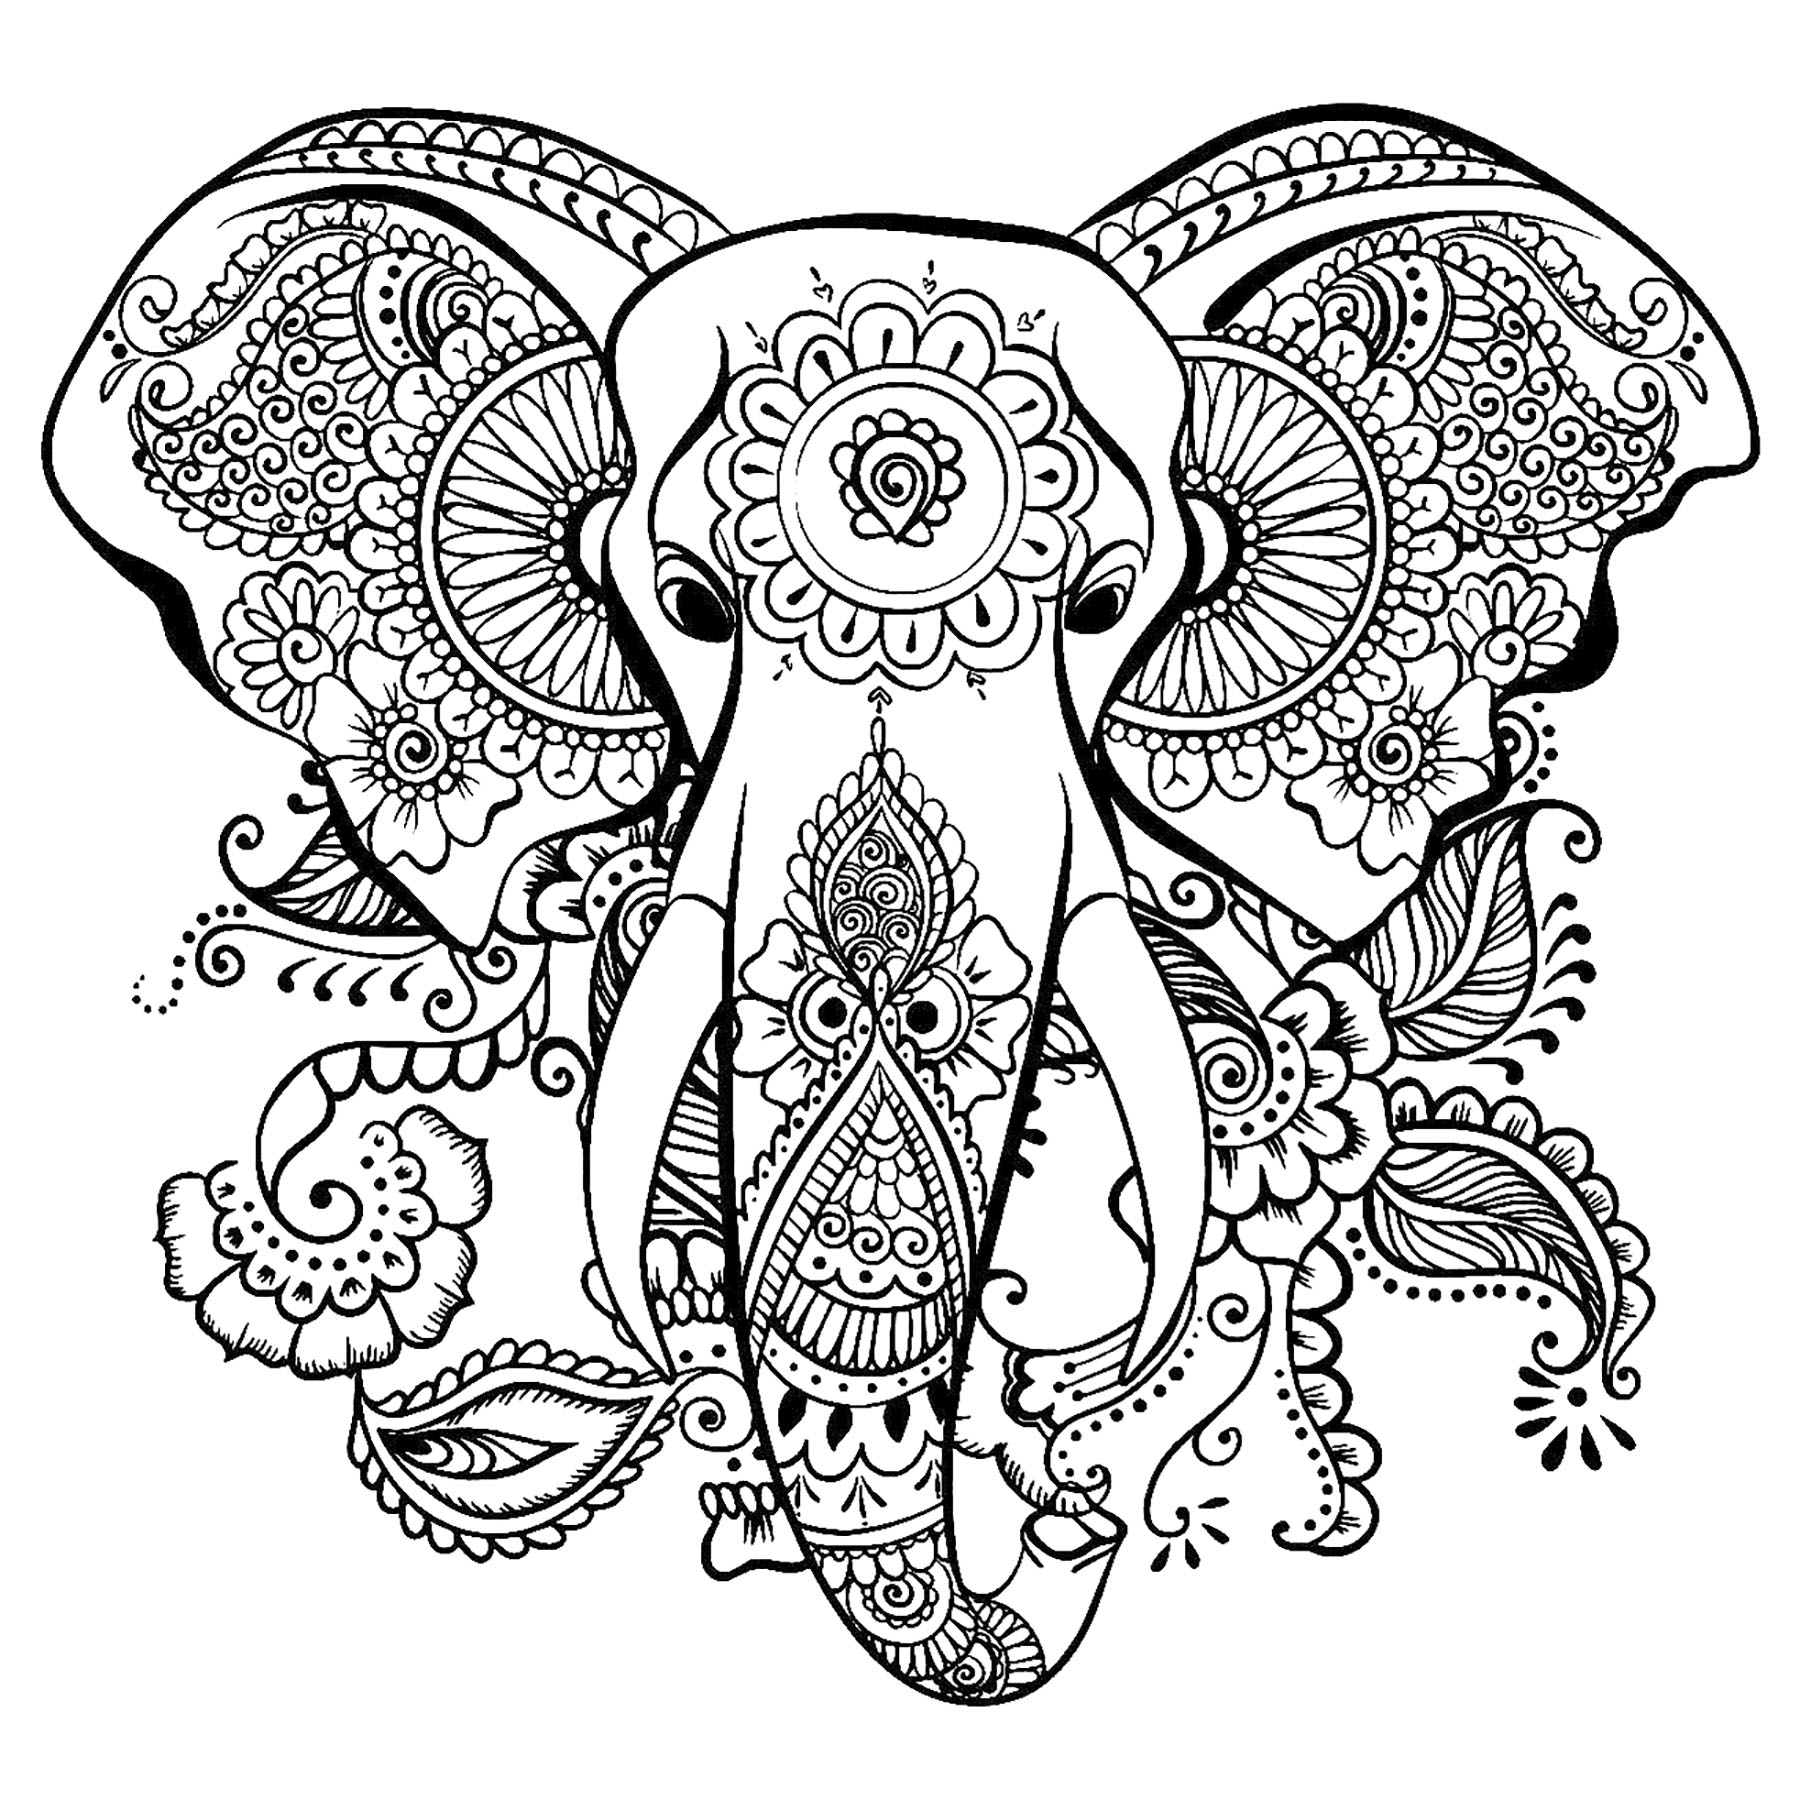 Coloriez ce joli éléphant et ses motifs élégants